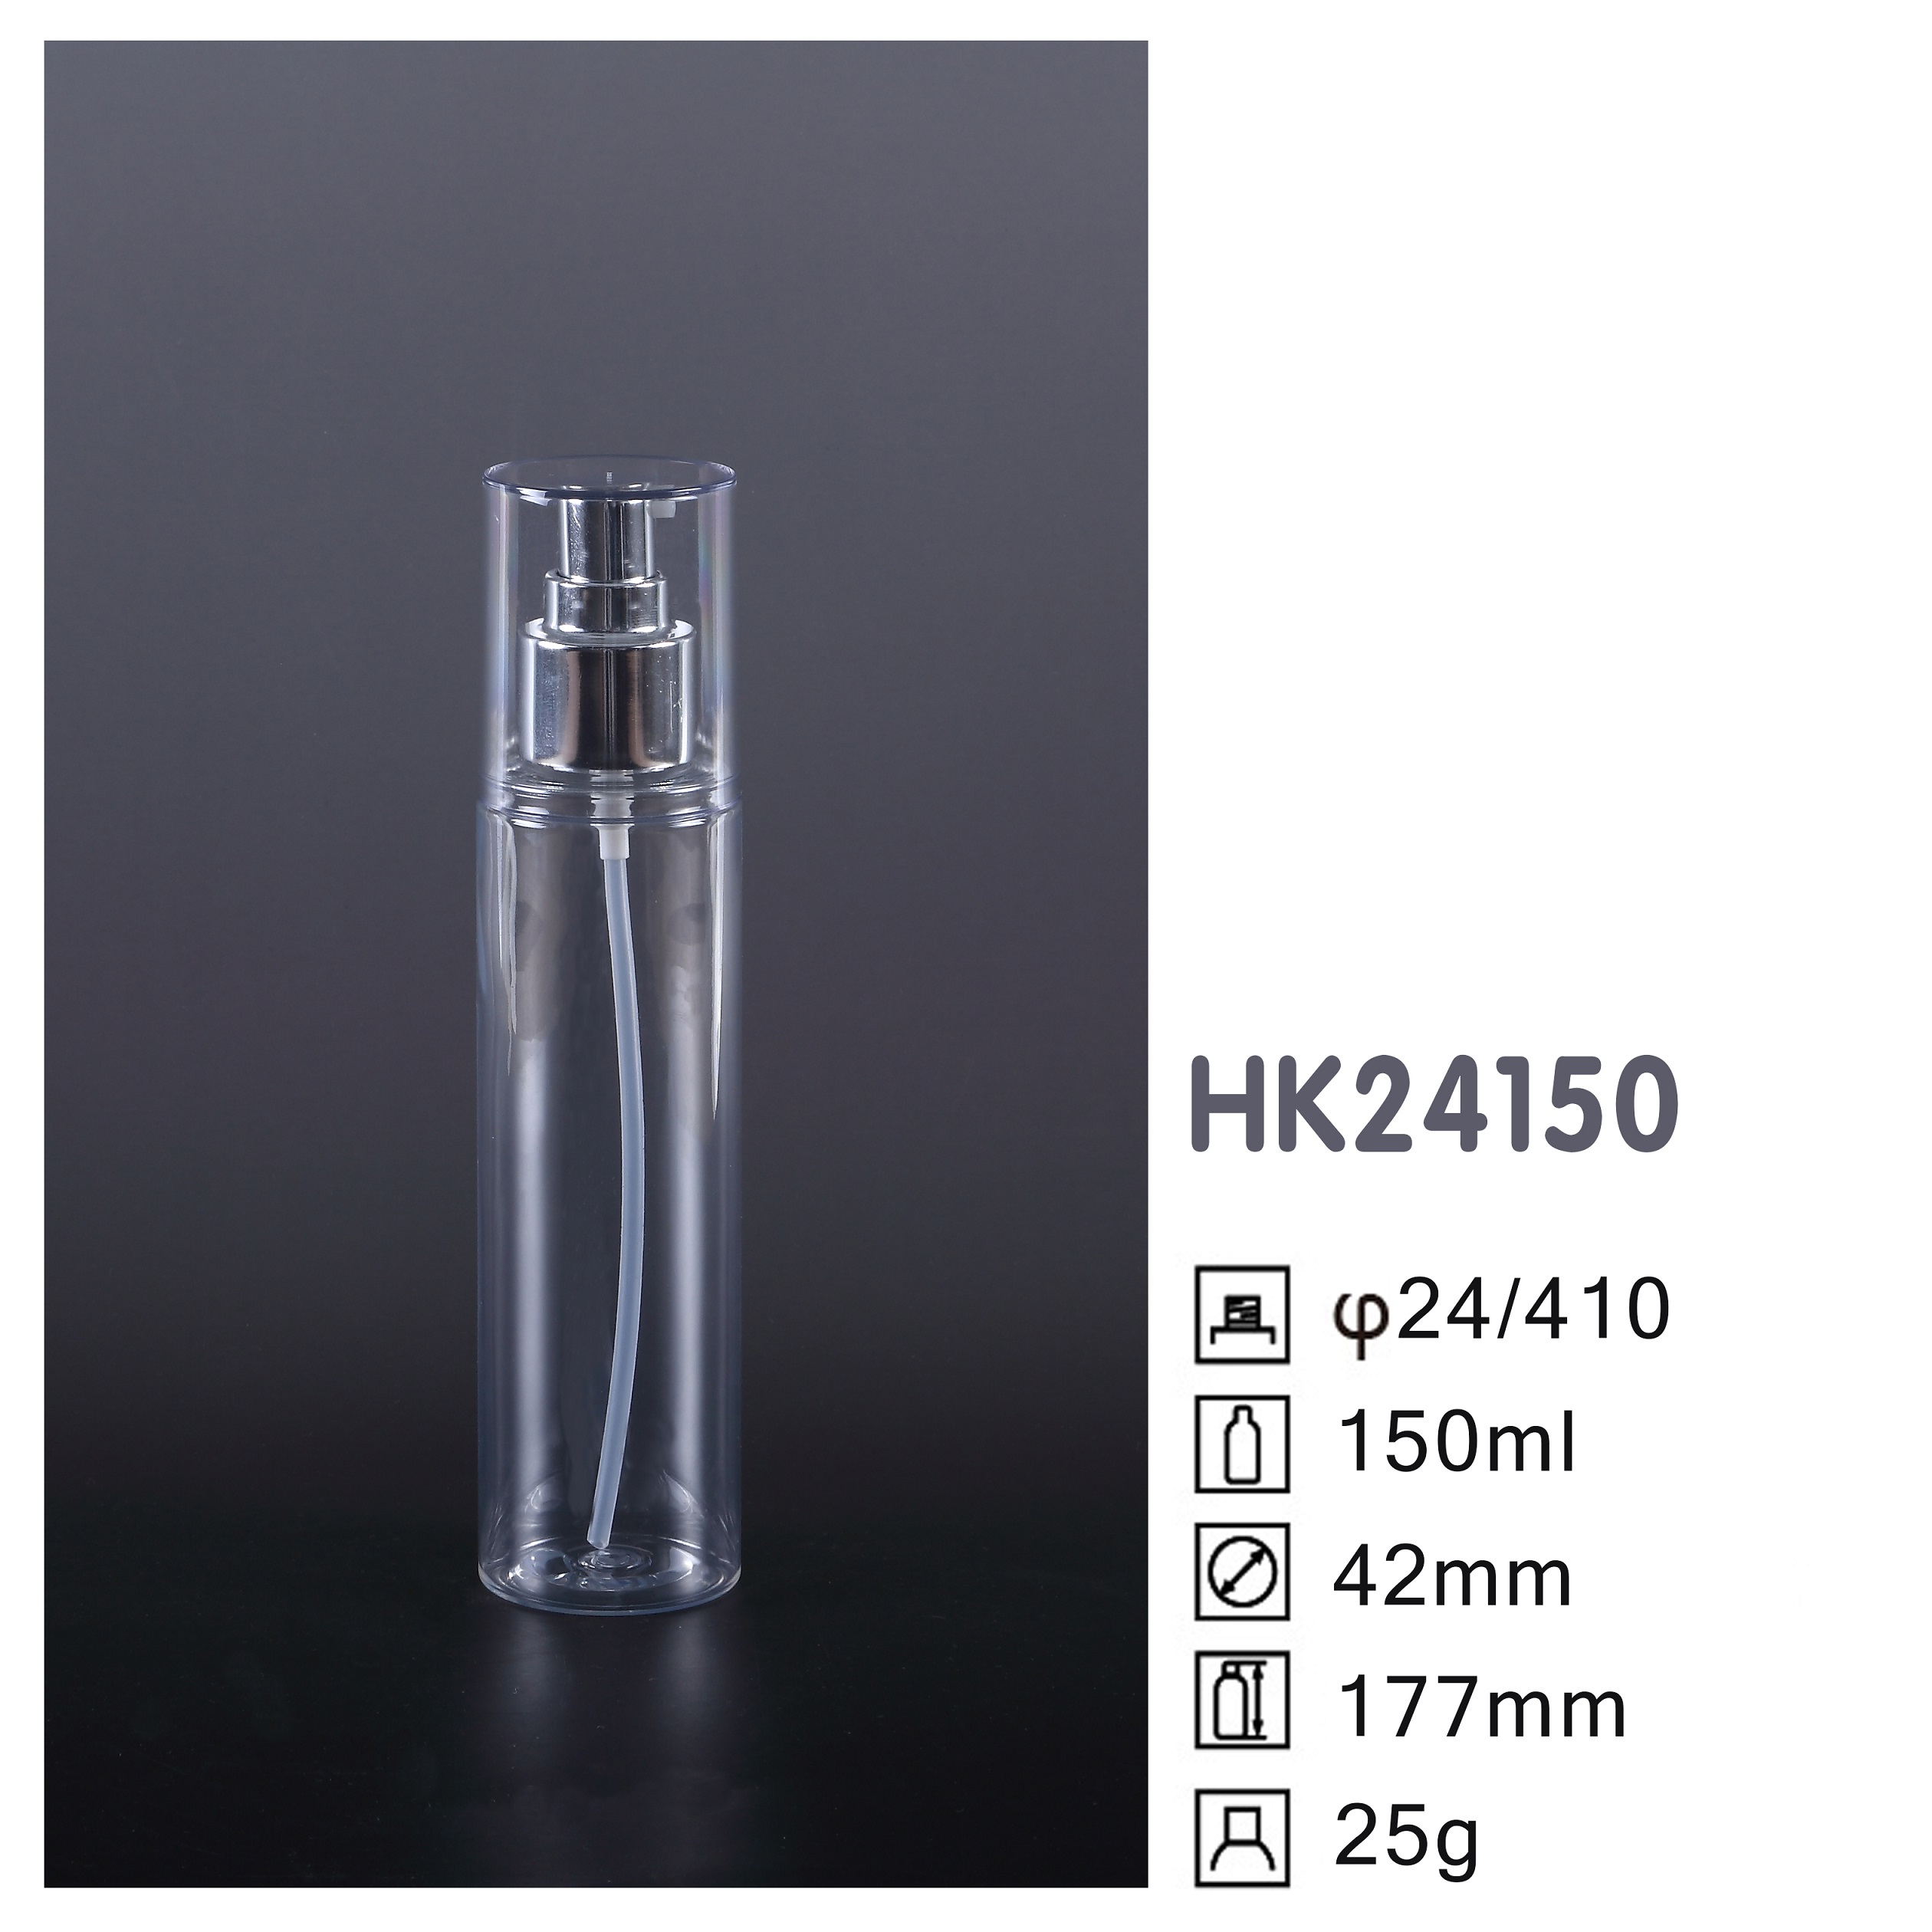 HK24150